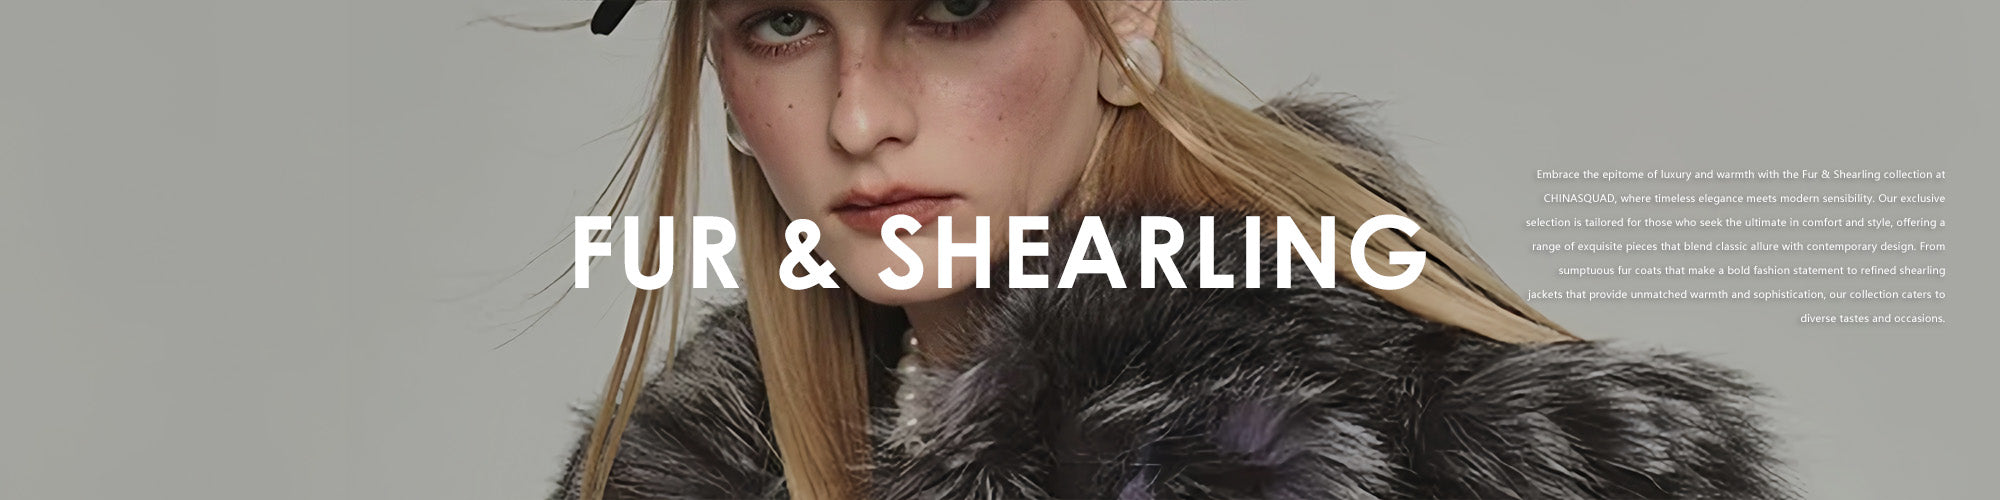 Fur & Shearling for Women